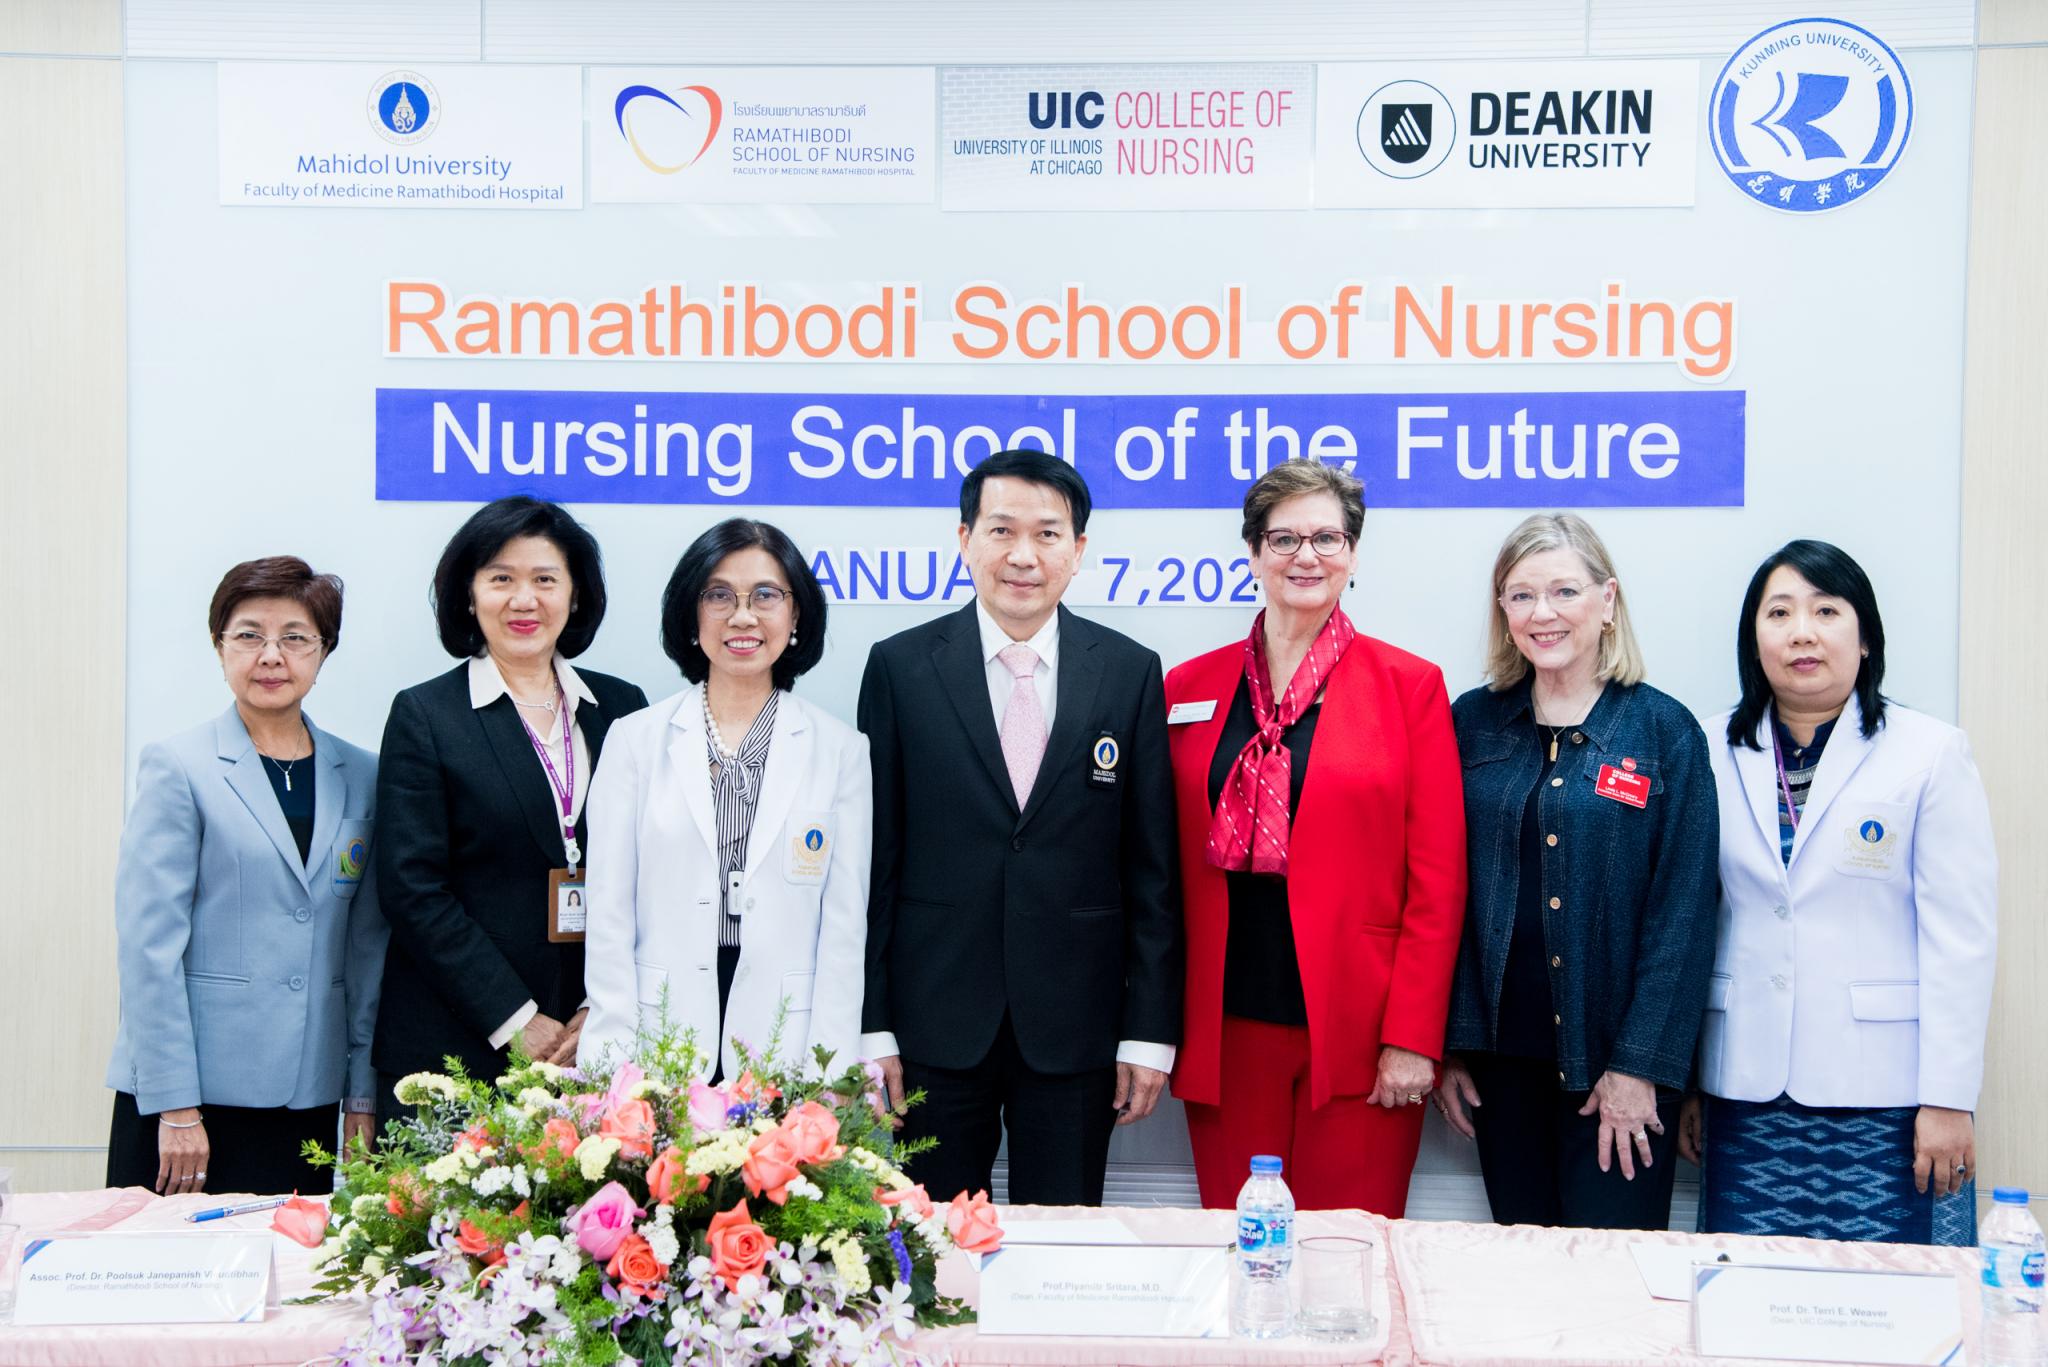 โรงเรียนพยาบาลรามาธิบดี แถลงข่าว Ramathibodi School of Nursing, Nursing School of the Future